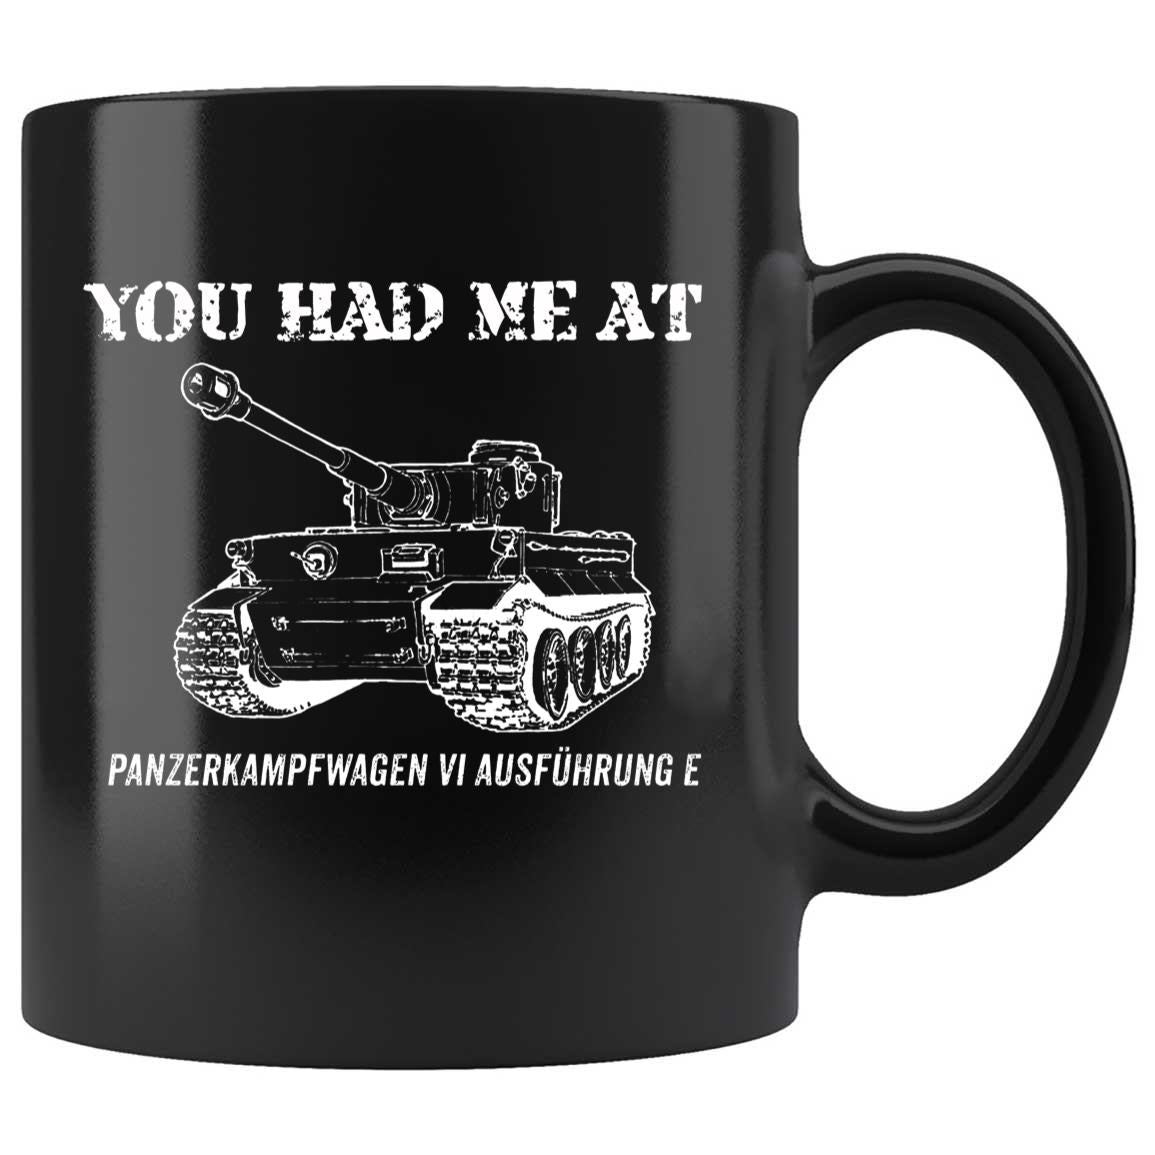 Skitongifts Coffee Mug Funny Ceramic Novelty You Had Me At - Panzerkampfwagen Vi Ausführung E VTf7KcX